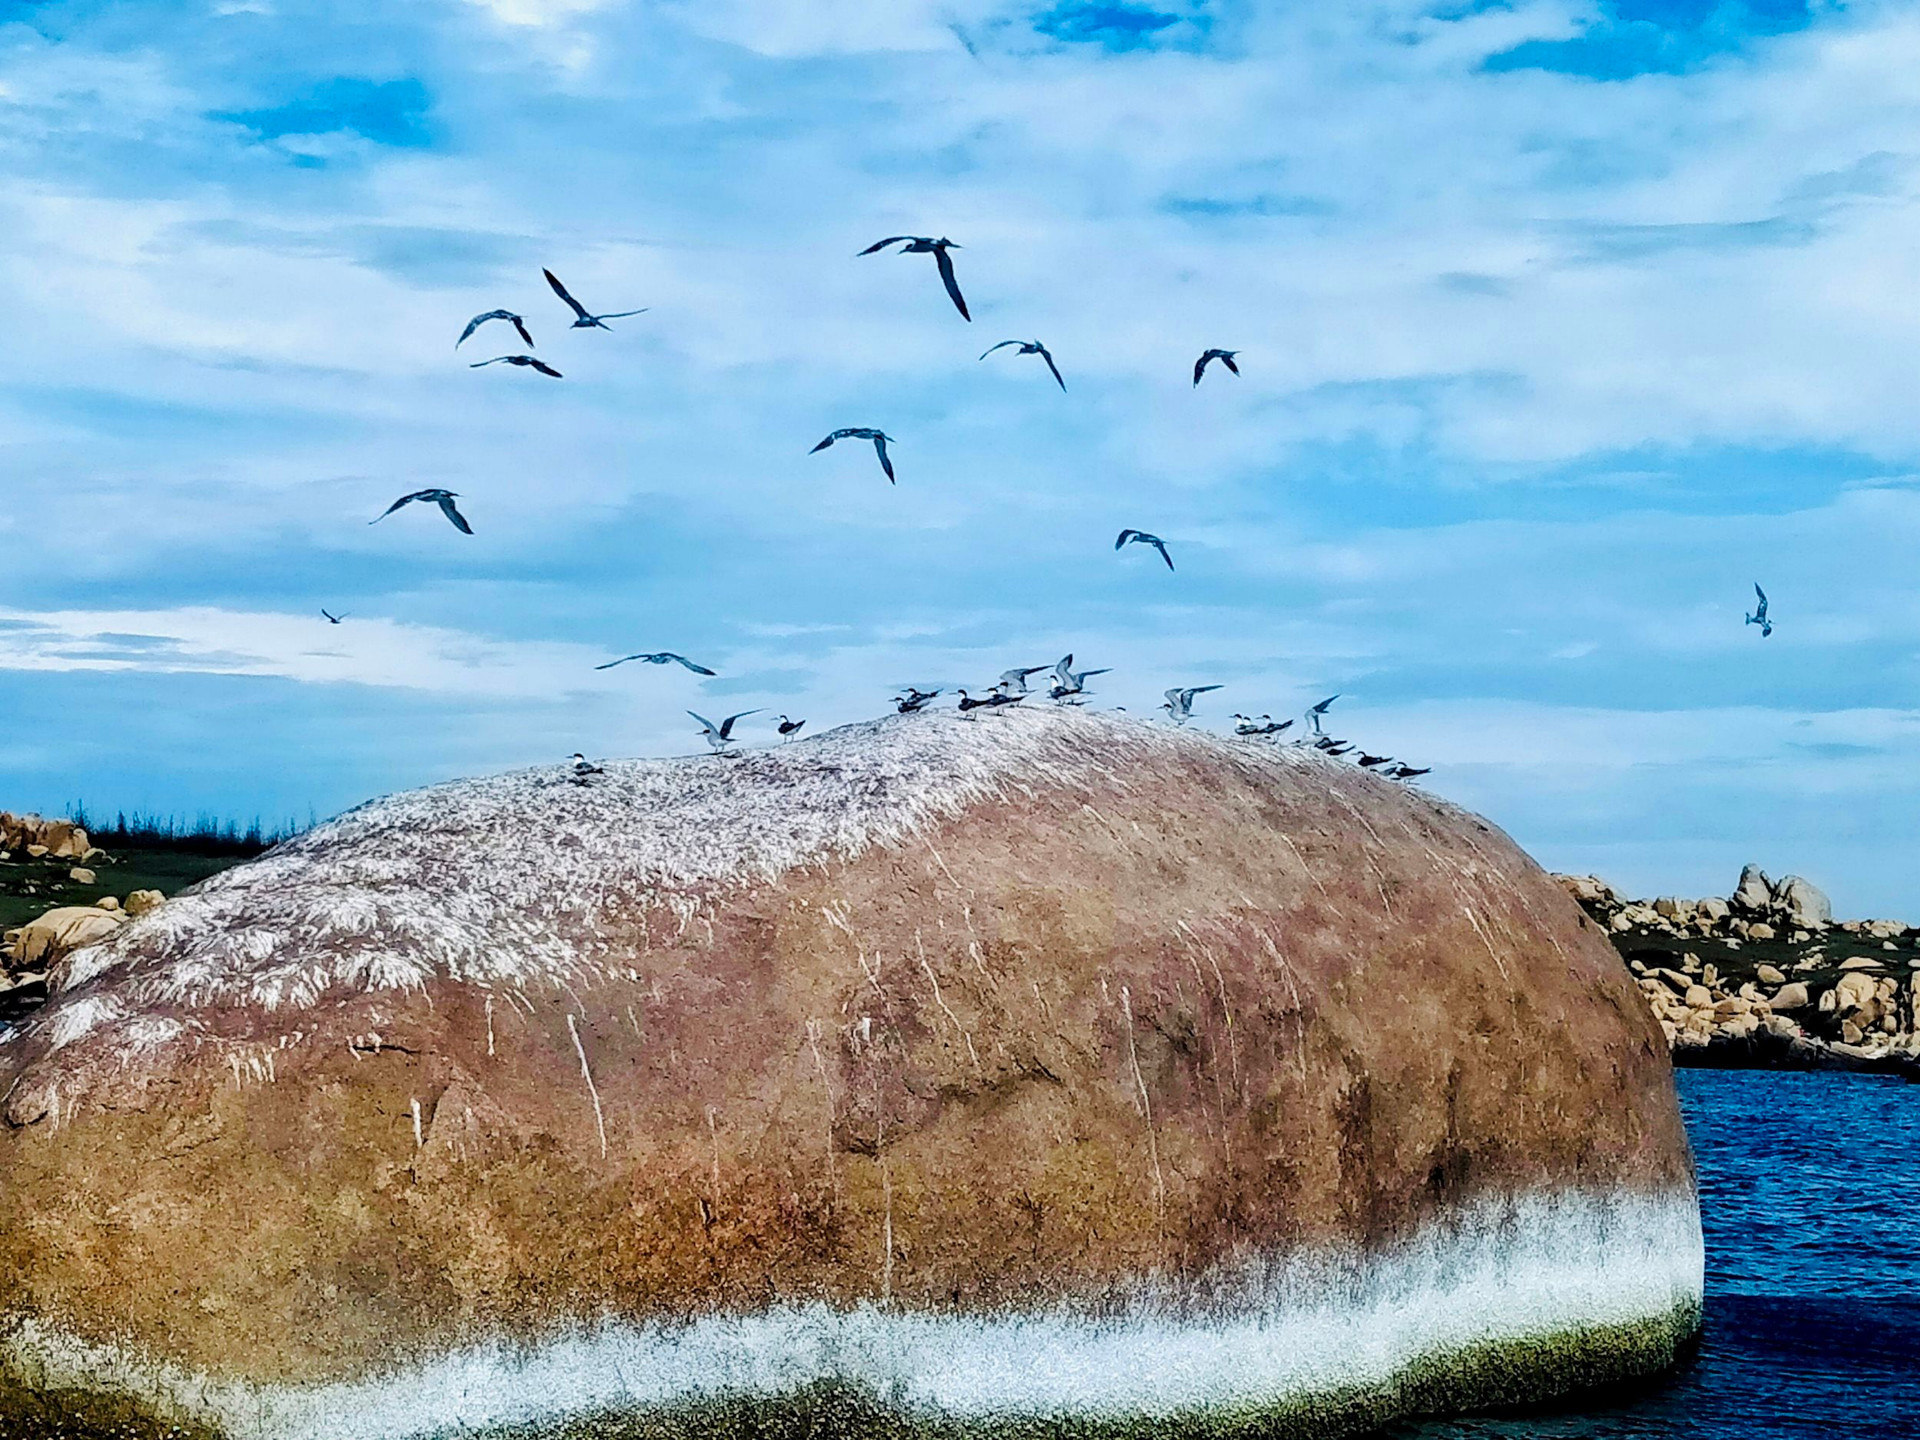 Một hòn đảo cách bờ biển Bình Thuận có hơn 9km, bãi Tiên đẹp như phim, hòn chim thấy chim bay vô số - Ảnh 4.